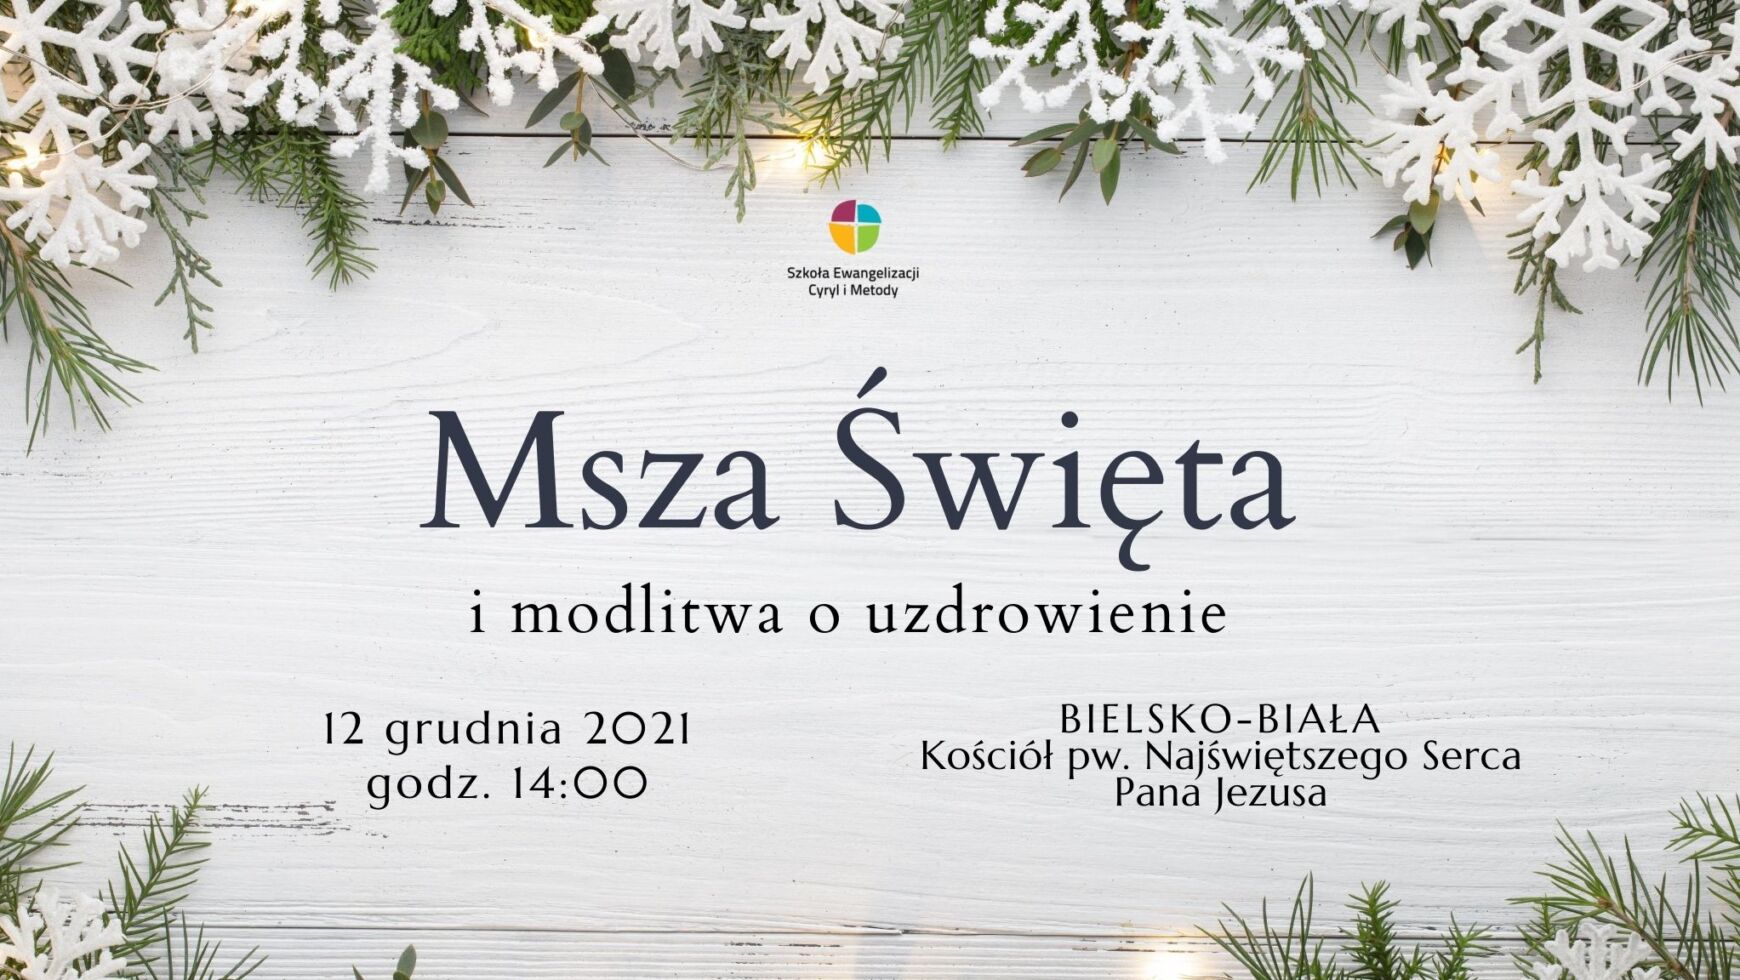 Msza Święta i modlitwa o uzdrowienie, Bielsko-Biała 12.12.2021